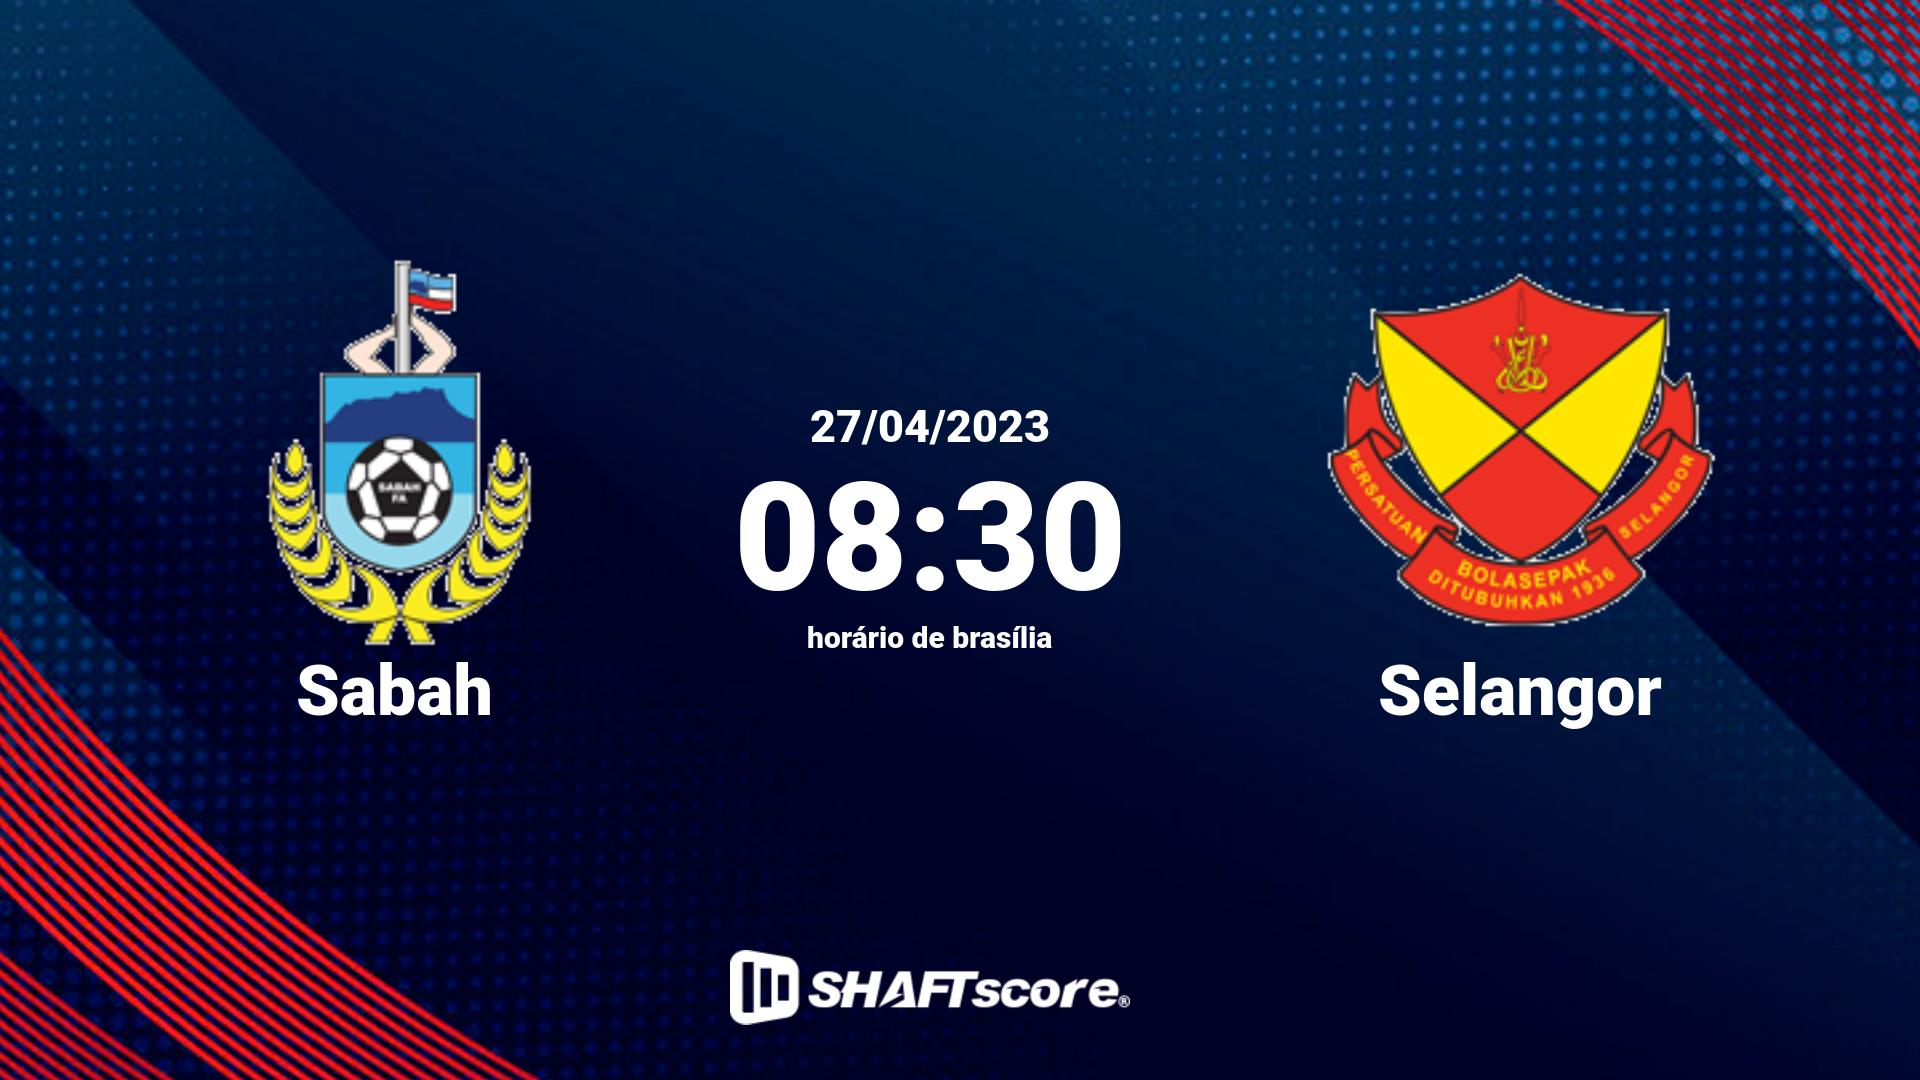 Estatísticas do jogo Sabah vs Selangor 27.04 08:30